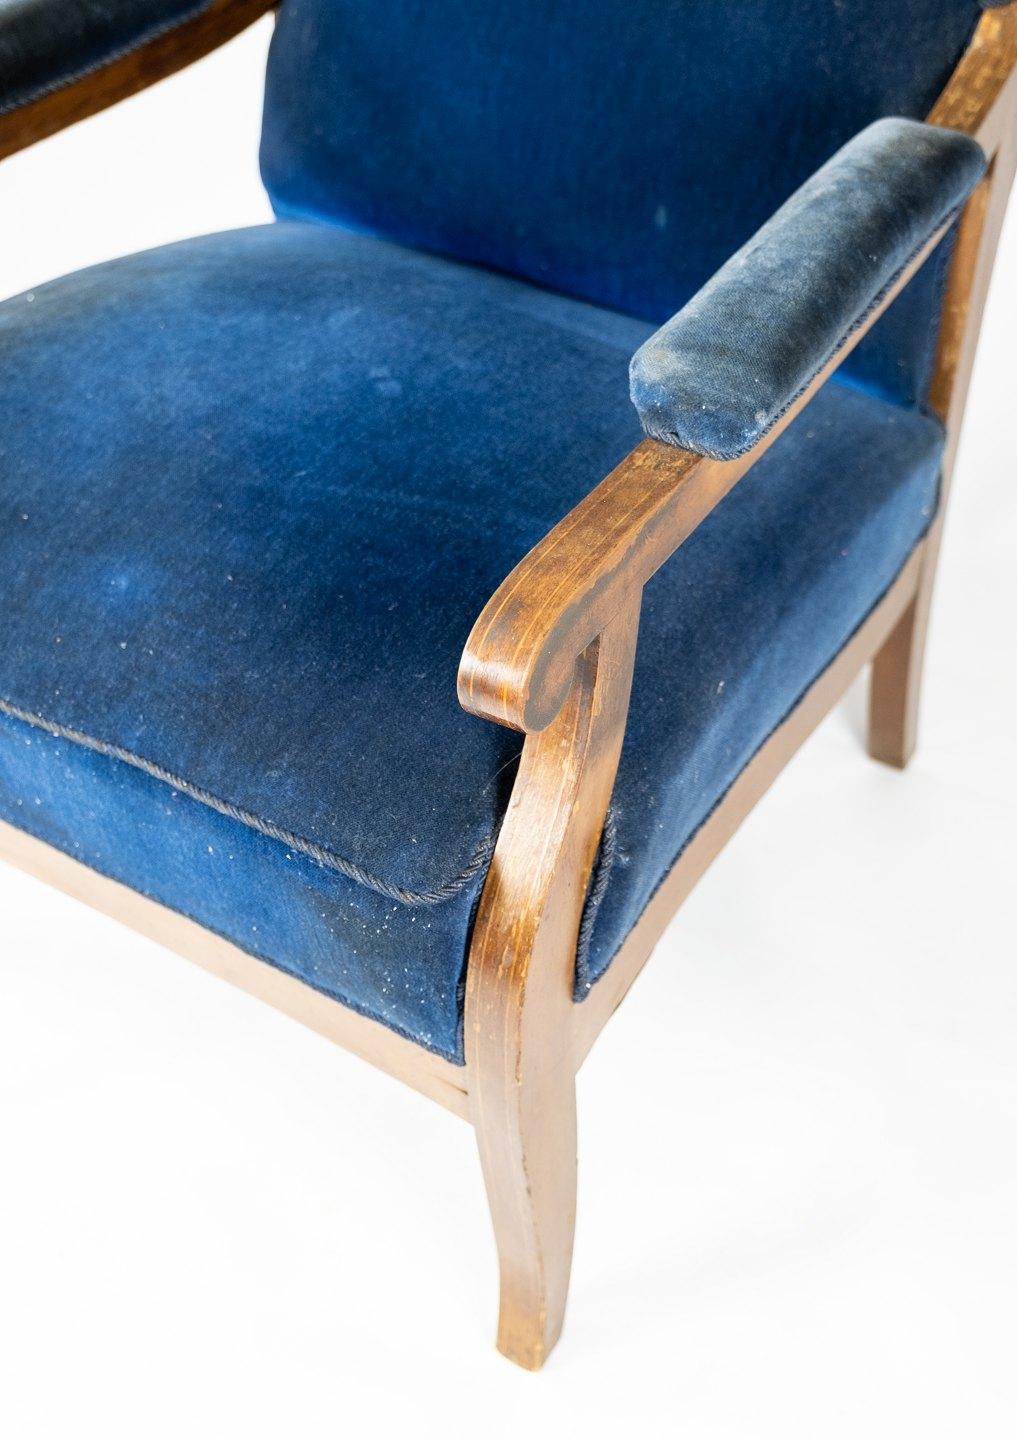 Le fauteuil, conçu par Fritz Henningsen, allie un confort luxueux à une élégance intemporelle. Revêtu d'un somptueux velours bleu et fabriqué en acajou, il respire la sophistication et le raffinement. L'attention méticuleuse de Henningsen pour les